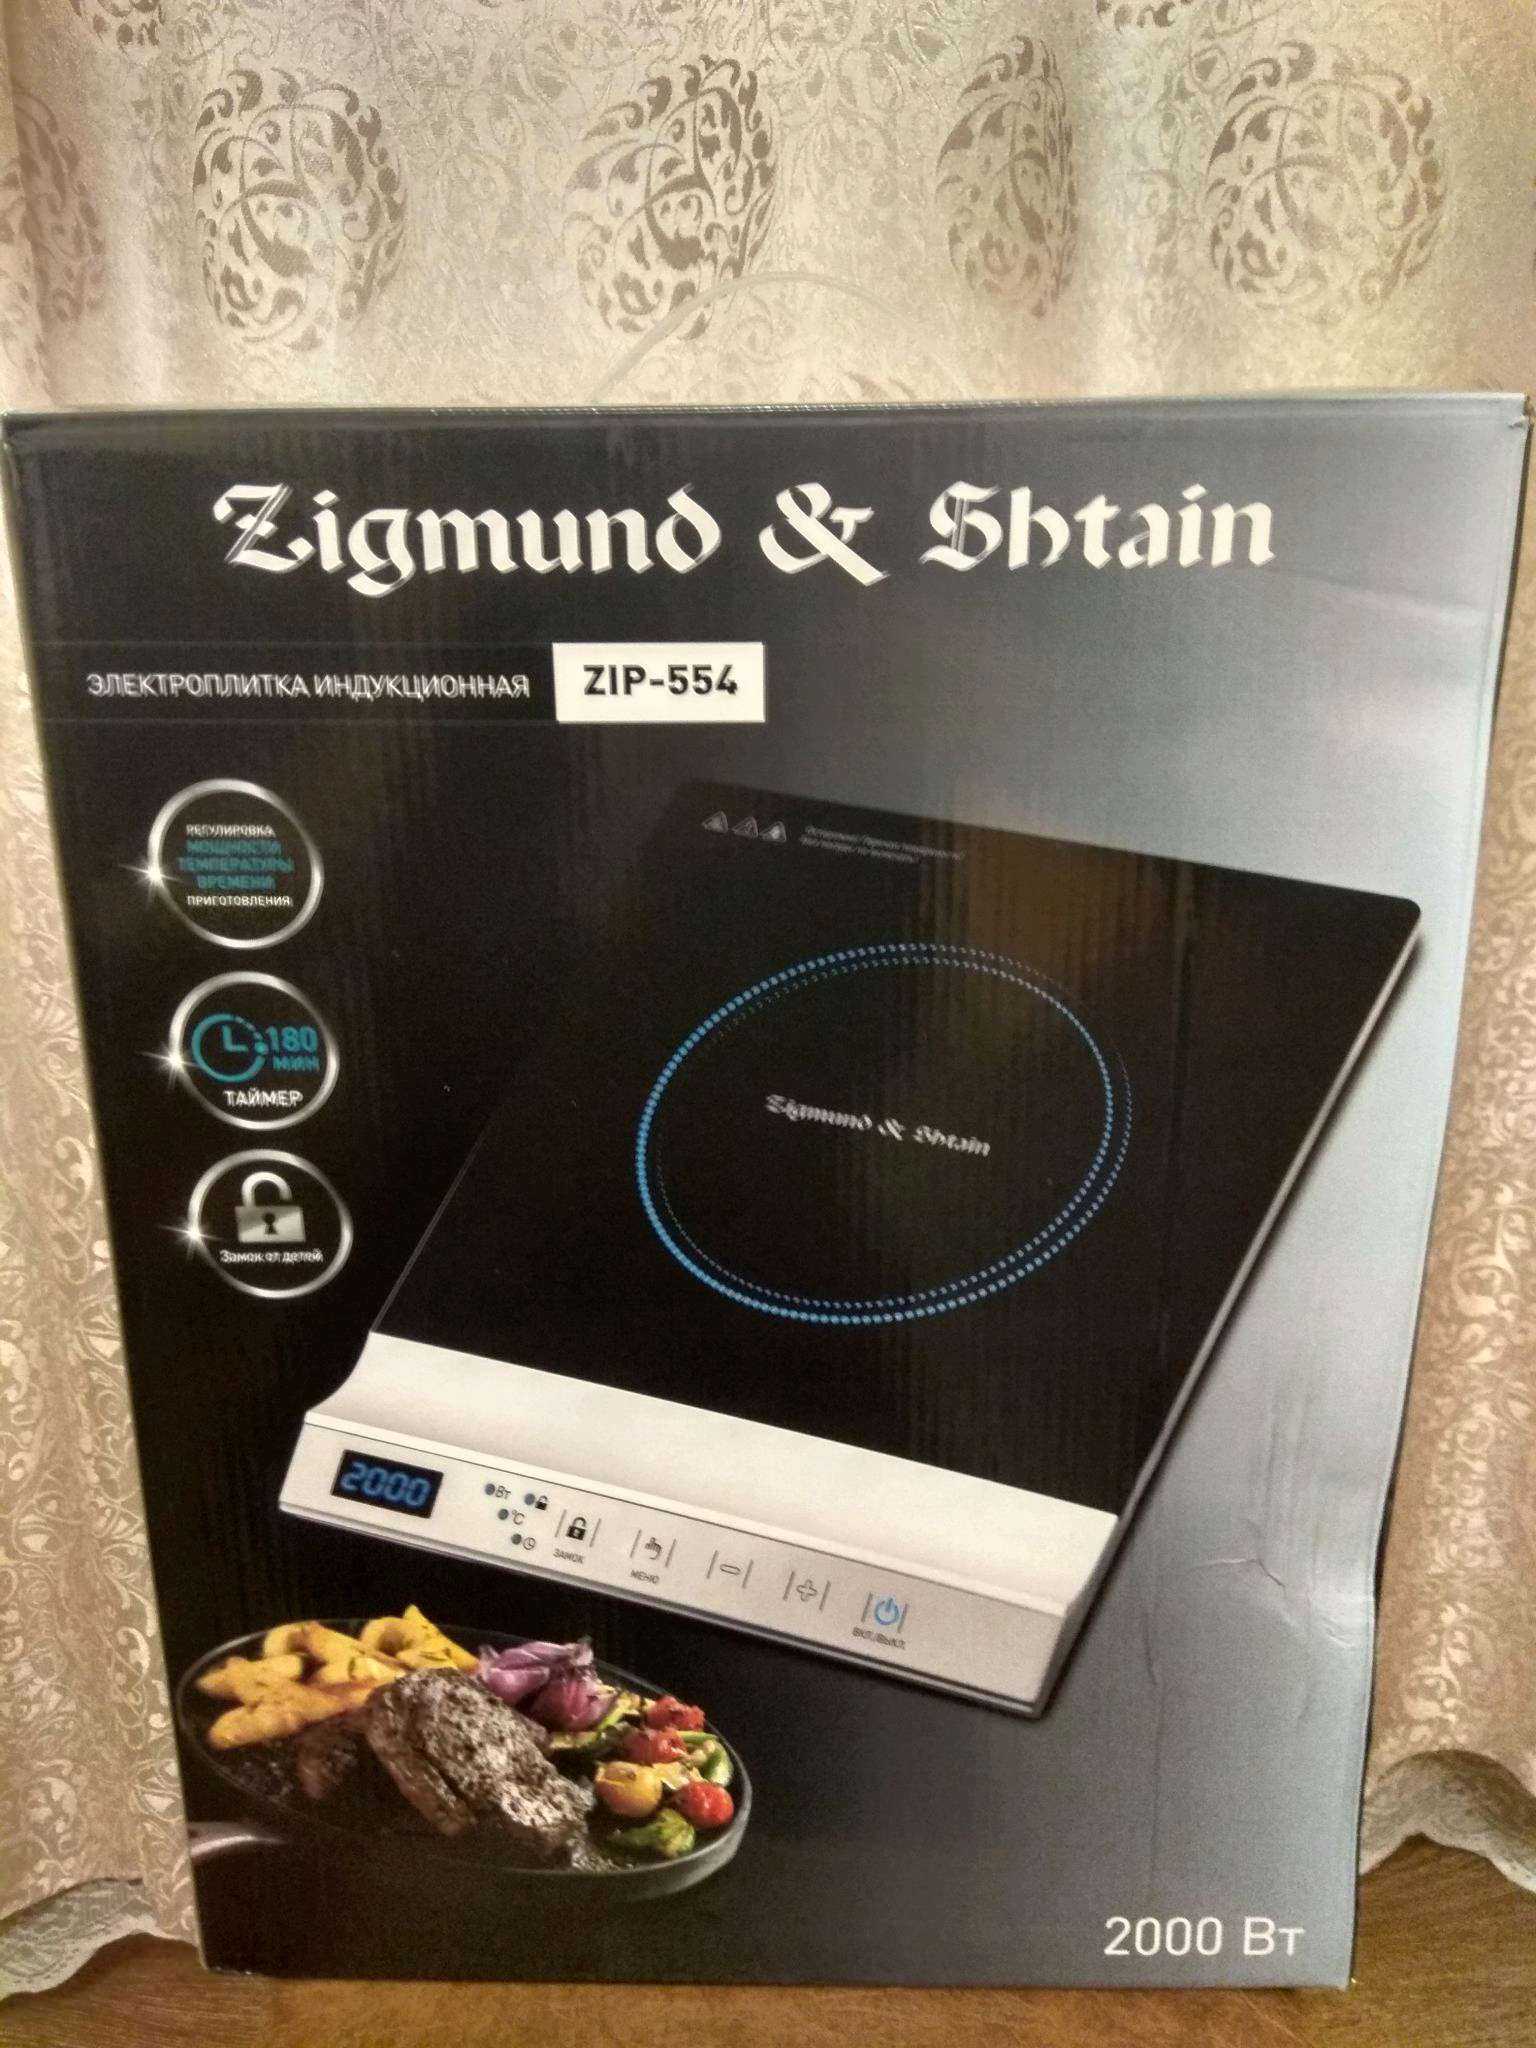 Zigmund & shtain zip-553 отзывы